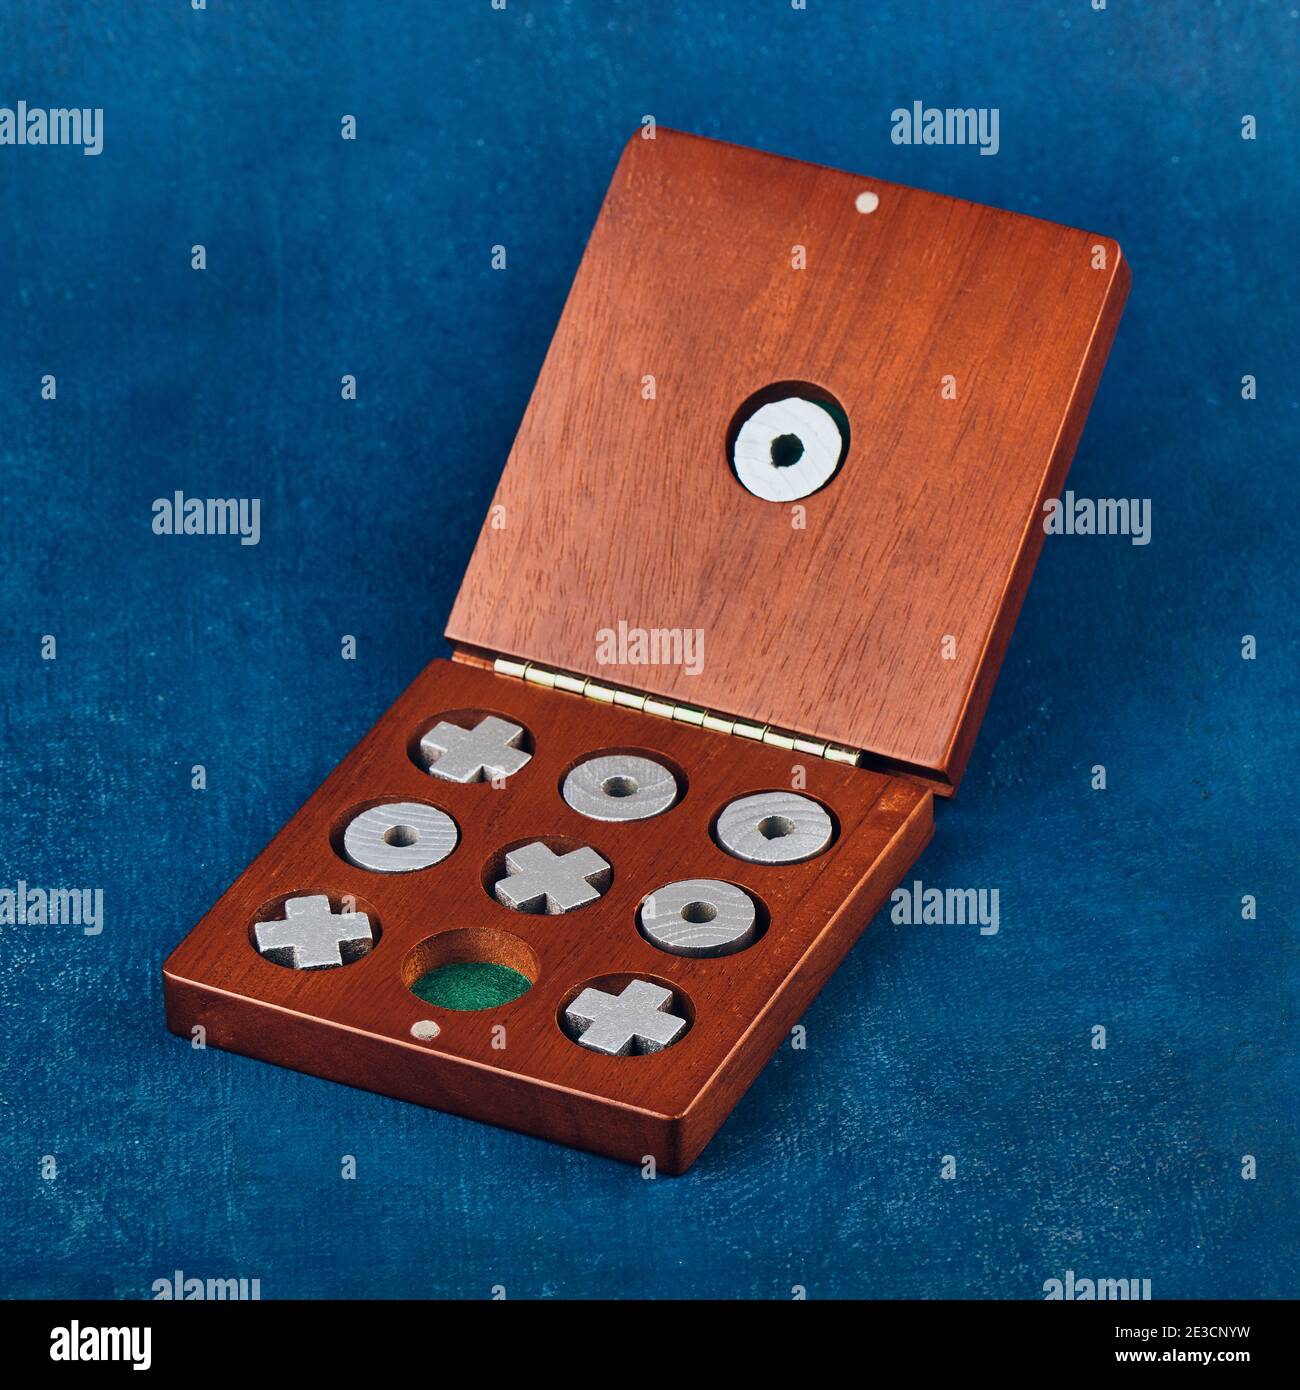 Tischspiel Tic Tac Toe in einer Holzkiste auf blauem Hintergrund, geringe Schärfentiefe Stockfoto